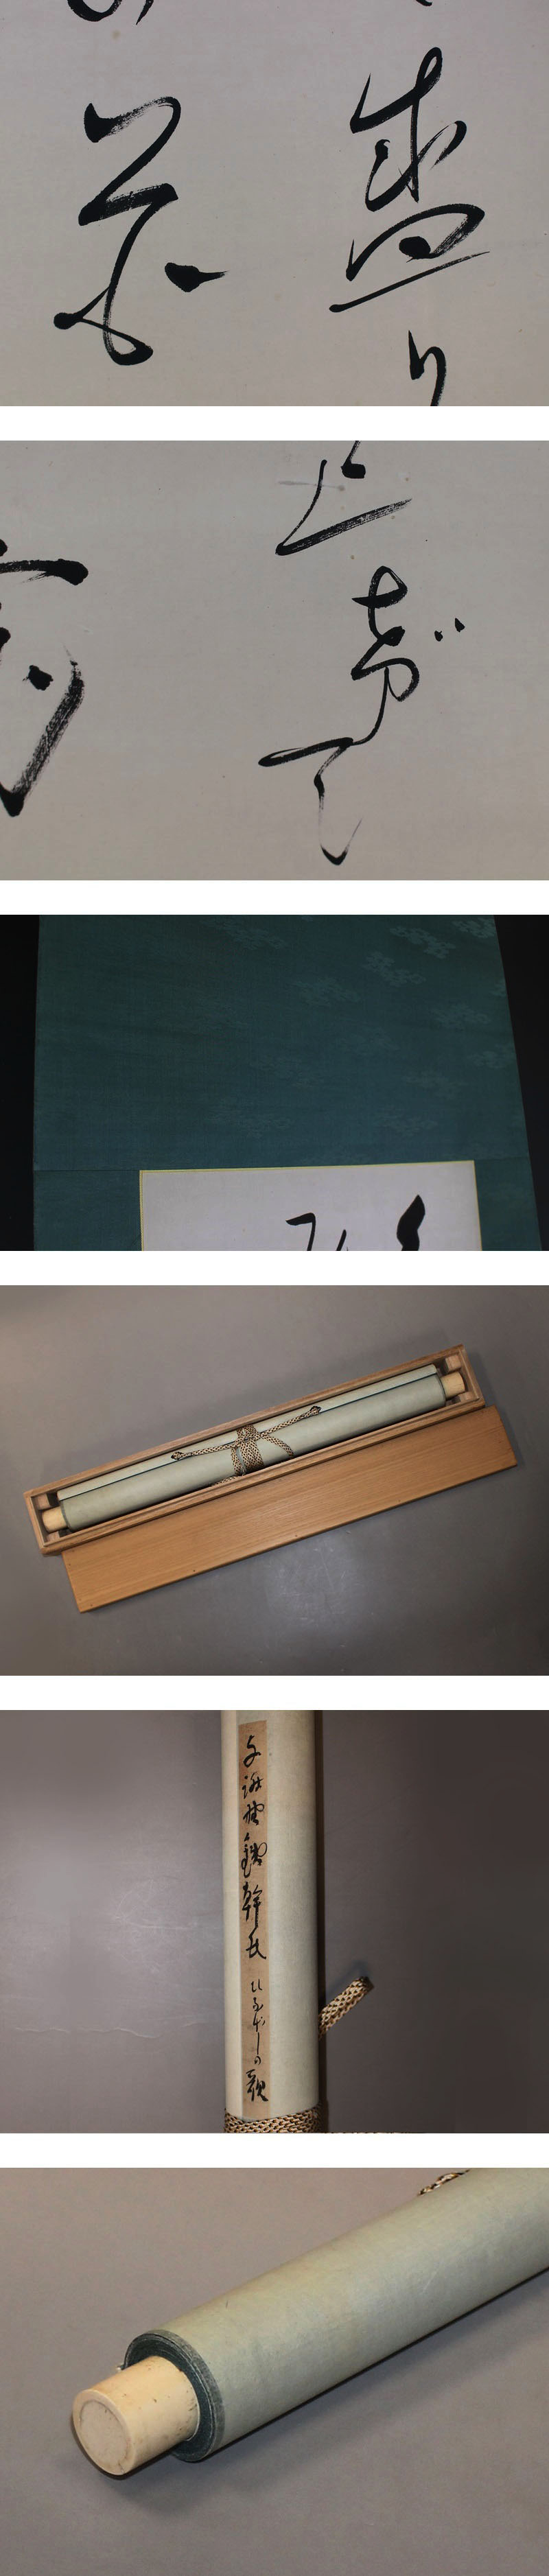 【日本製定番】与謝野鉄幹◆紙本◆合箱◆掛軸 z12223 掛軸